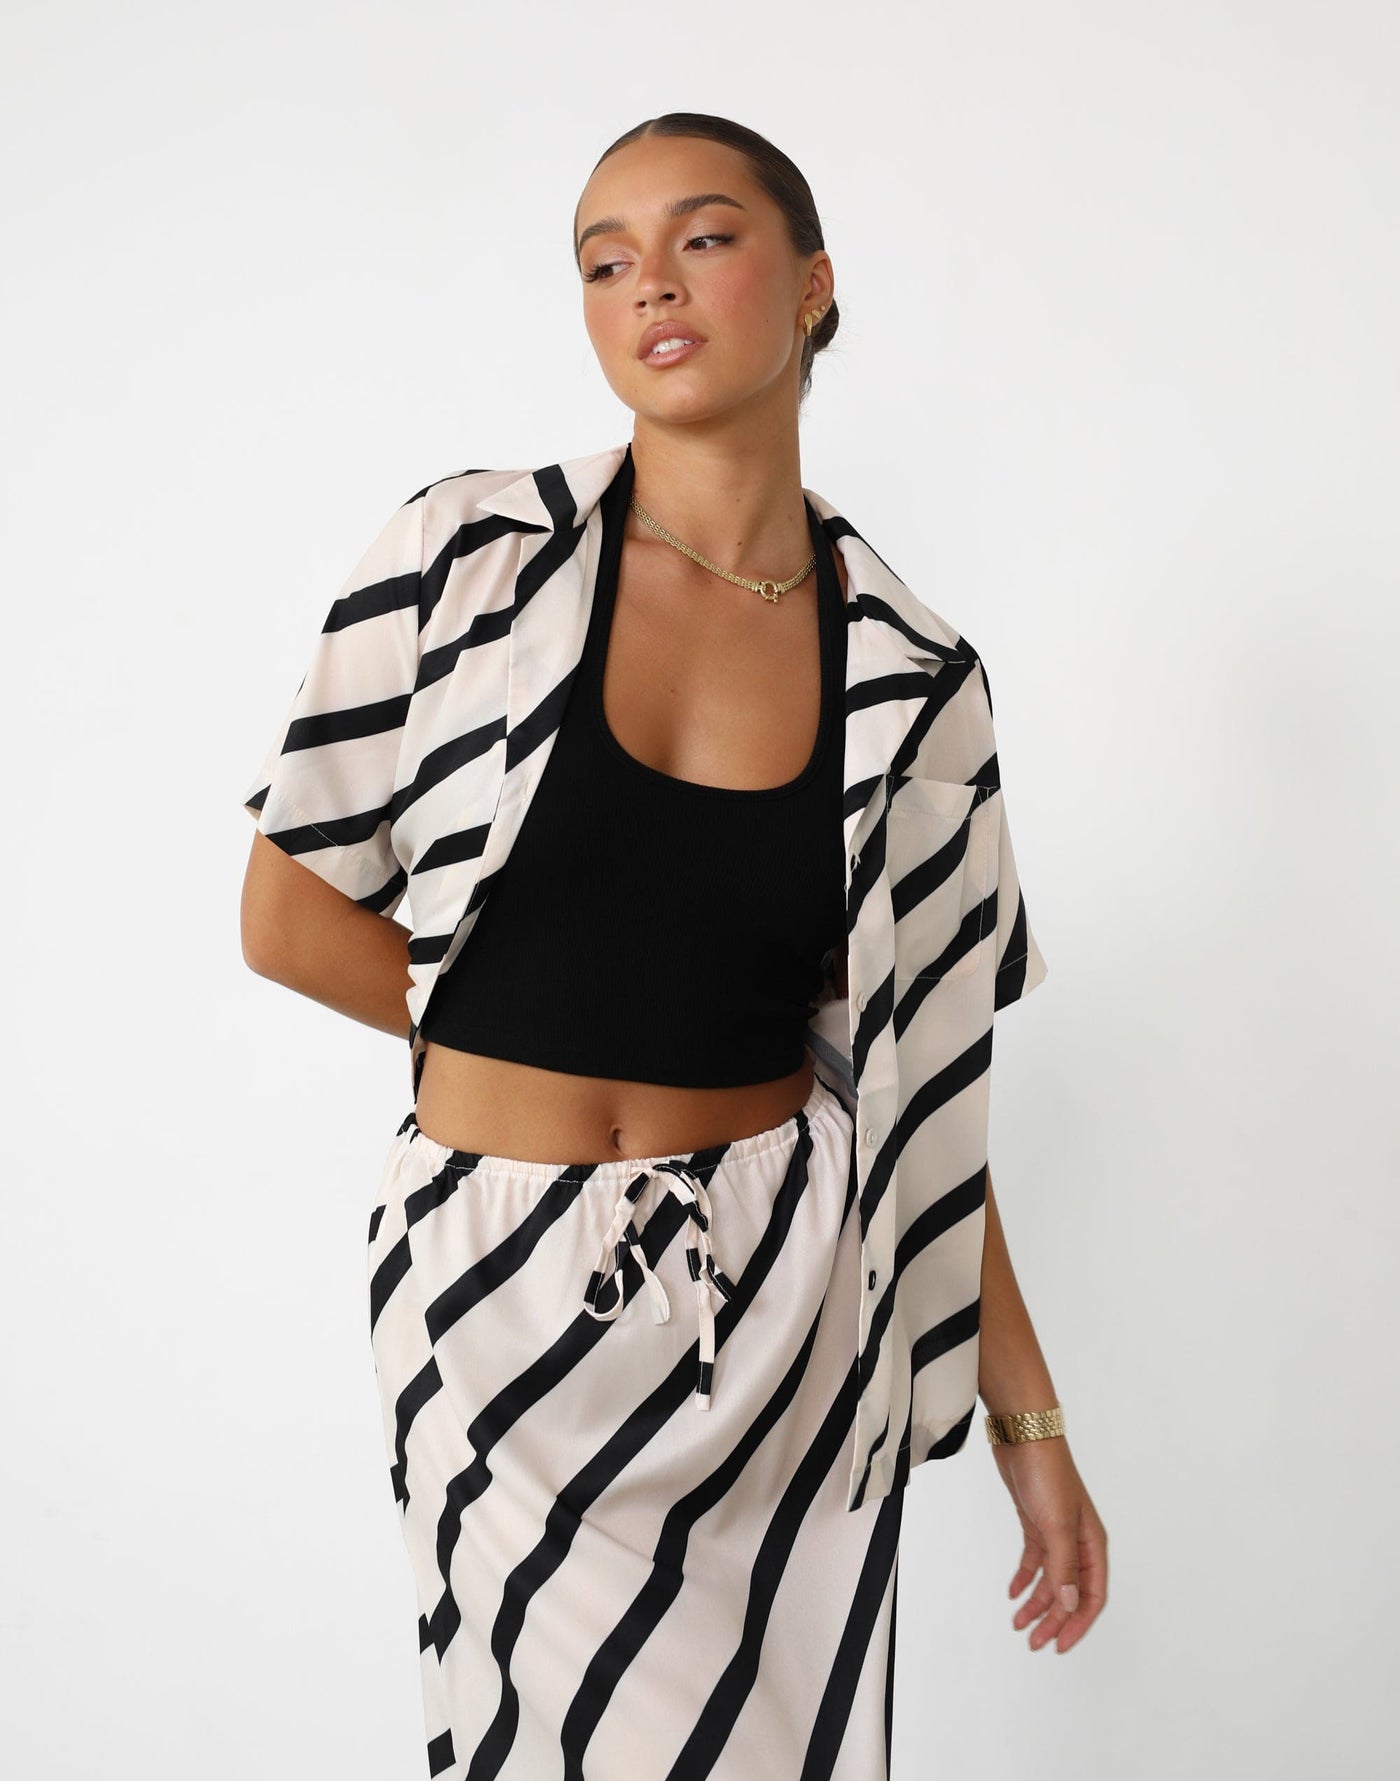 Mori Shirt (Stripe) - Button Up Diagonal Stripe Shirt - Women's Top - Charcoal Clothing